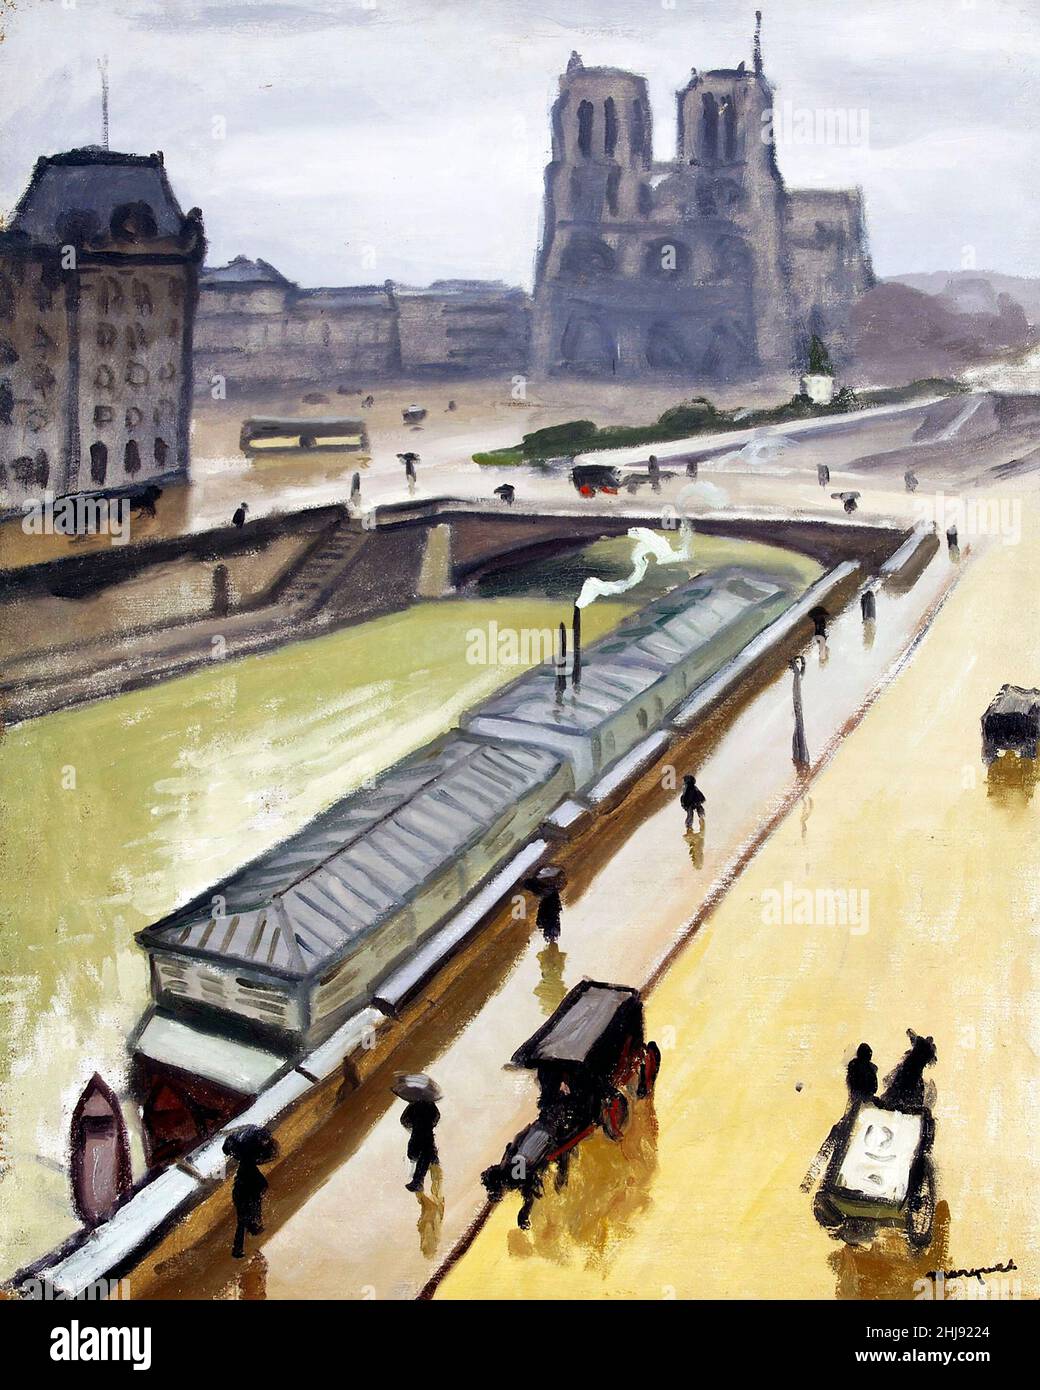 Jour de pluie.Notre Dame de Paris par le peintre Fauvist français Albert Marquet (1875-1947), huile sur toile, 1910 Banque D'Images